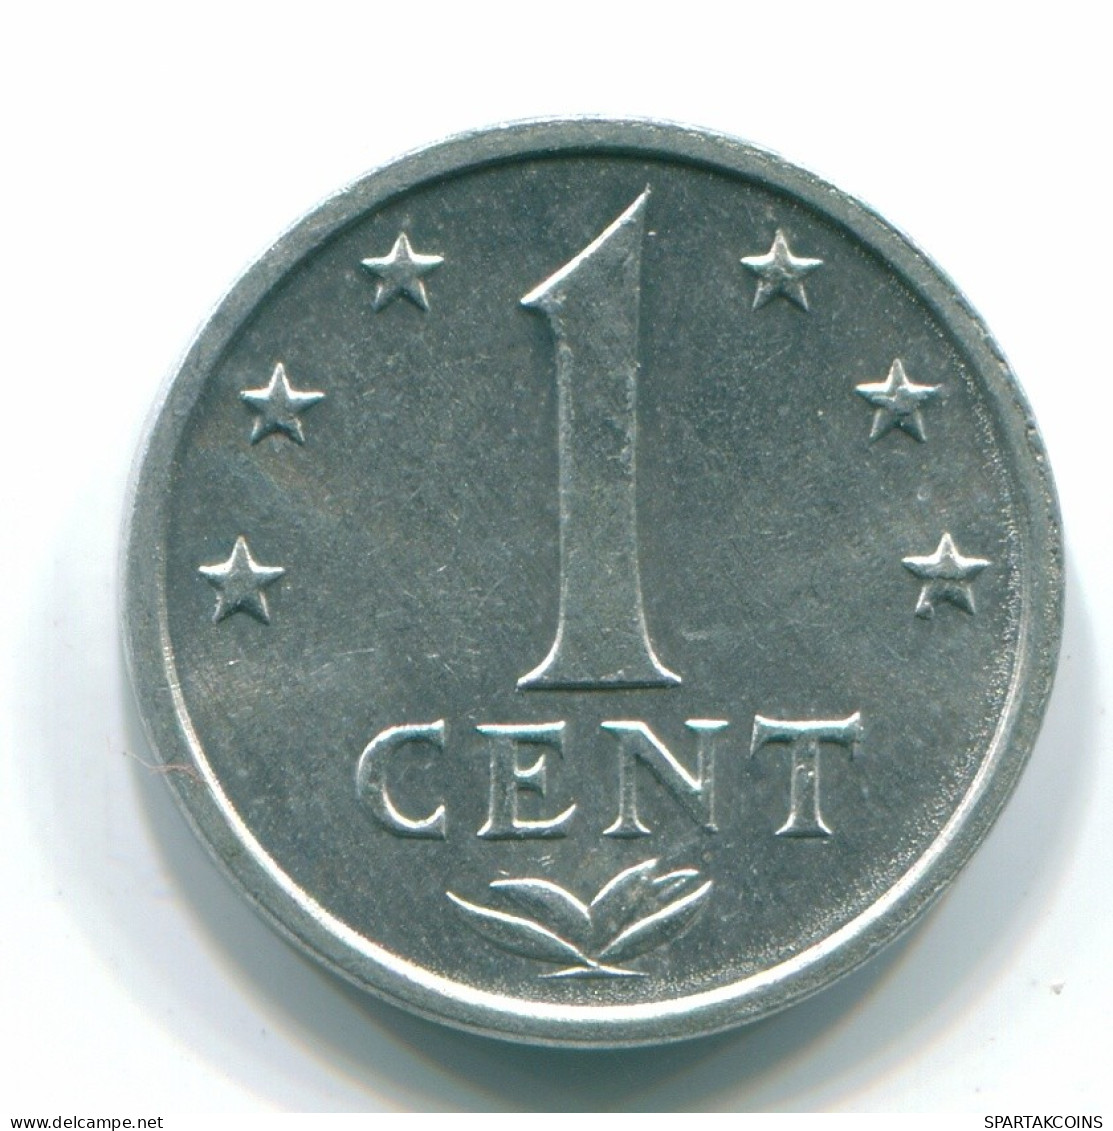 1 CENT 1980 NETHERLANDS ANTILLES Aluminium Colonial Coin #S11188.U.A - Niederländische Antillen